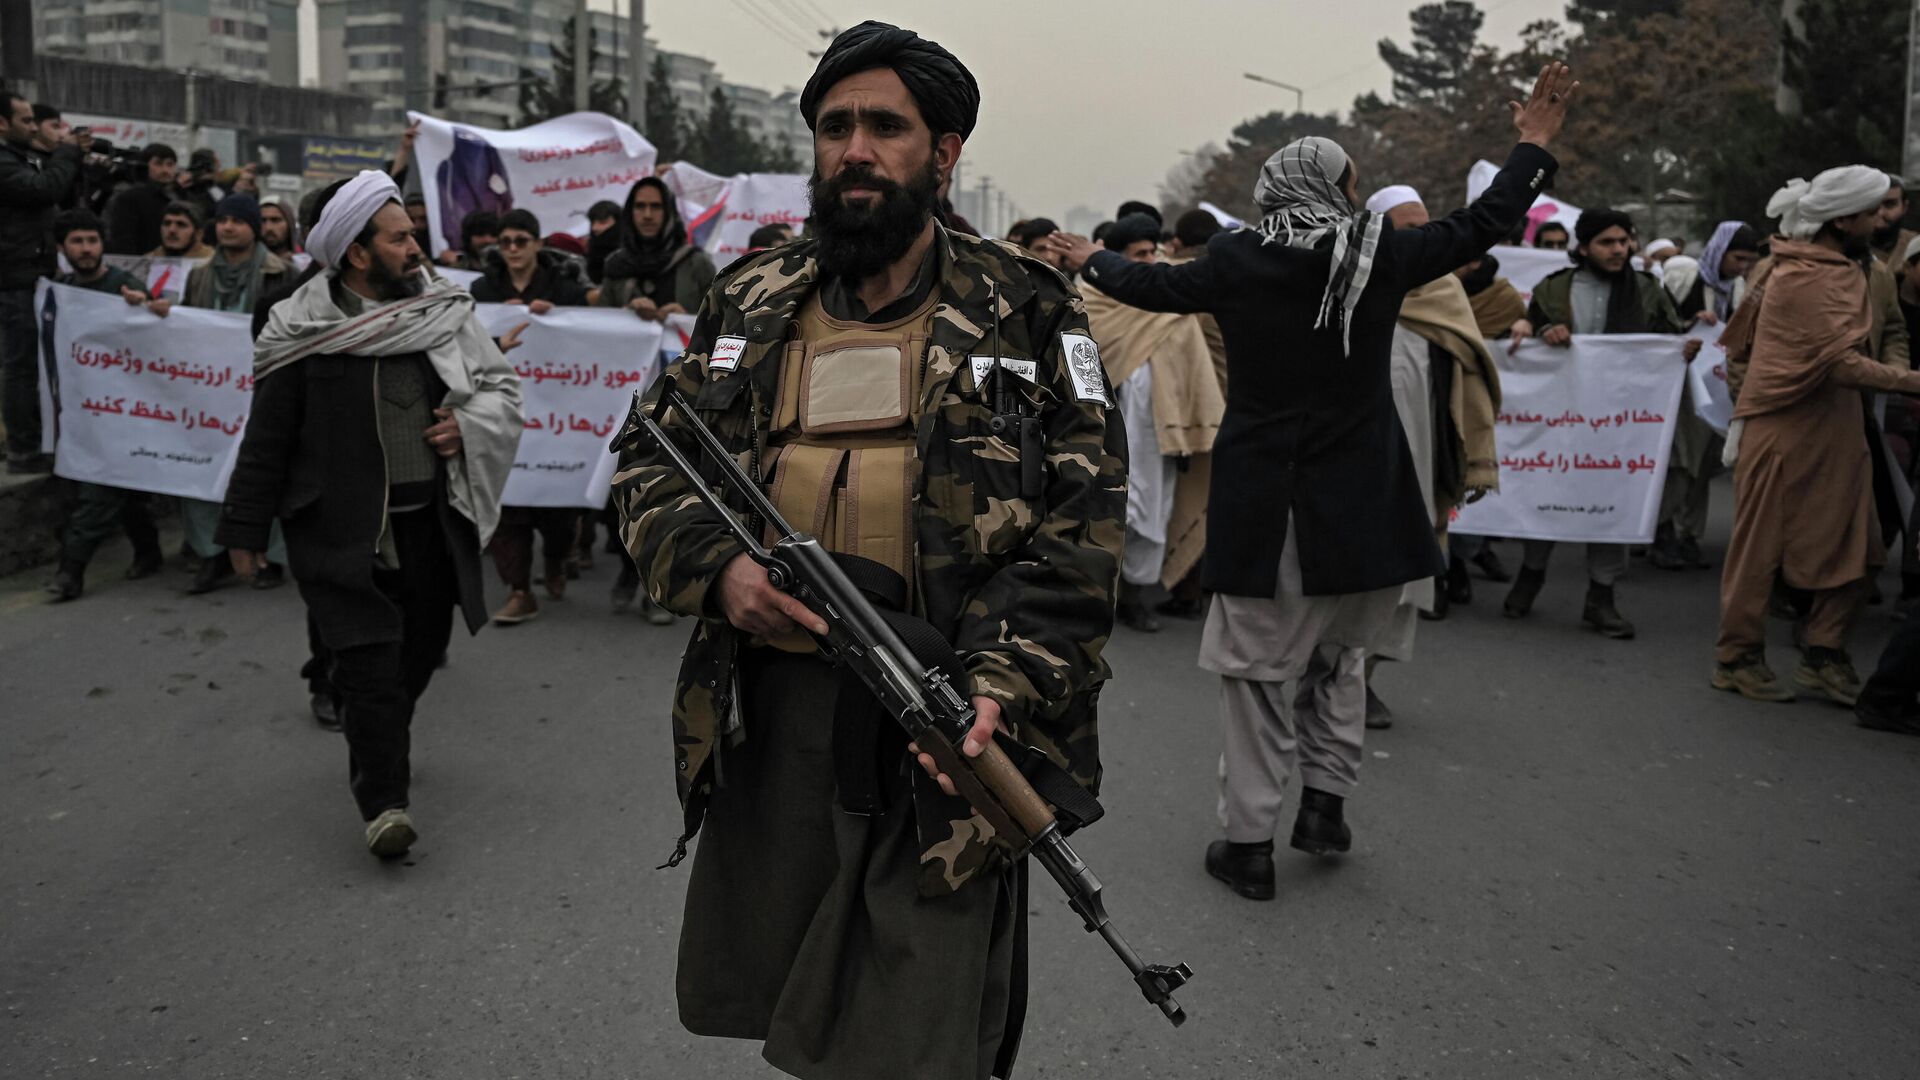 Боец Талибана сопровождает людей во время демонстрации осуждения недавней акции протеста афганских активистов за права женщин в Кабуле 21 января 2022 года. - Sputnik Абхазия, 1920, 18.02.2022